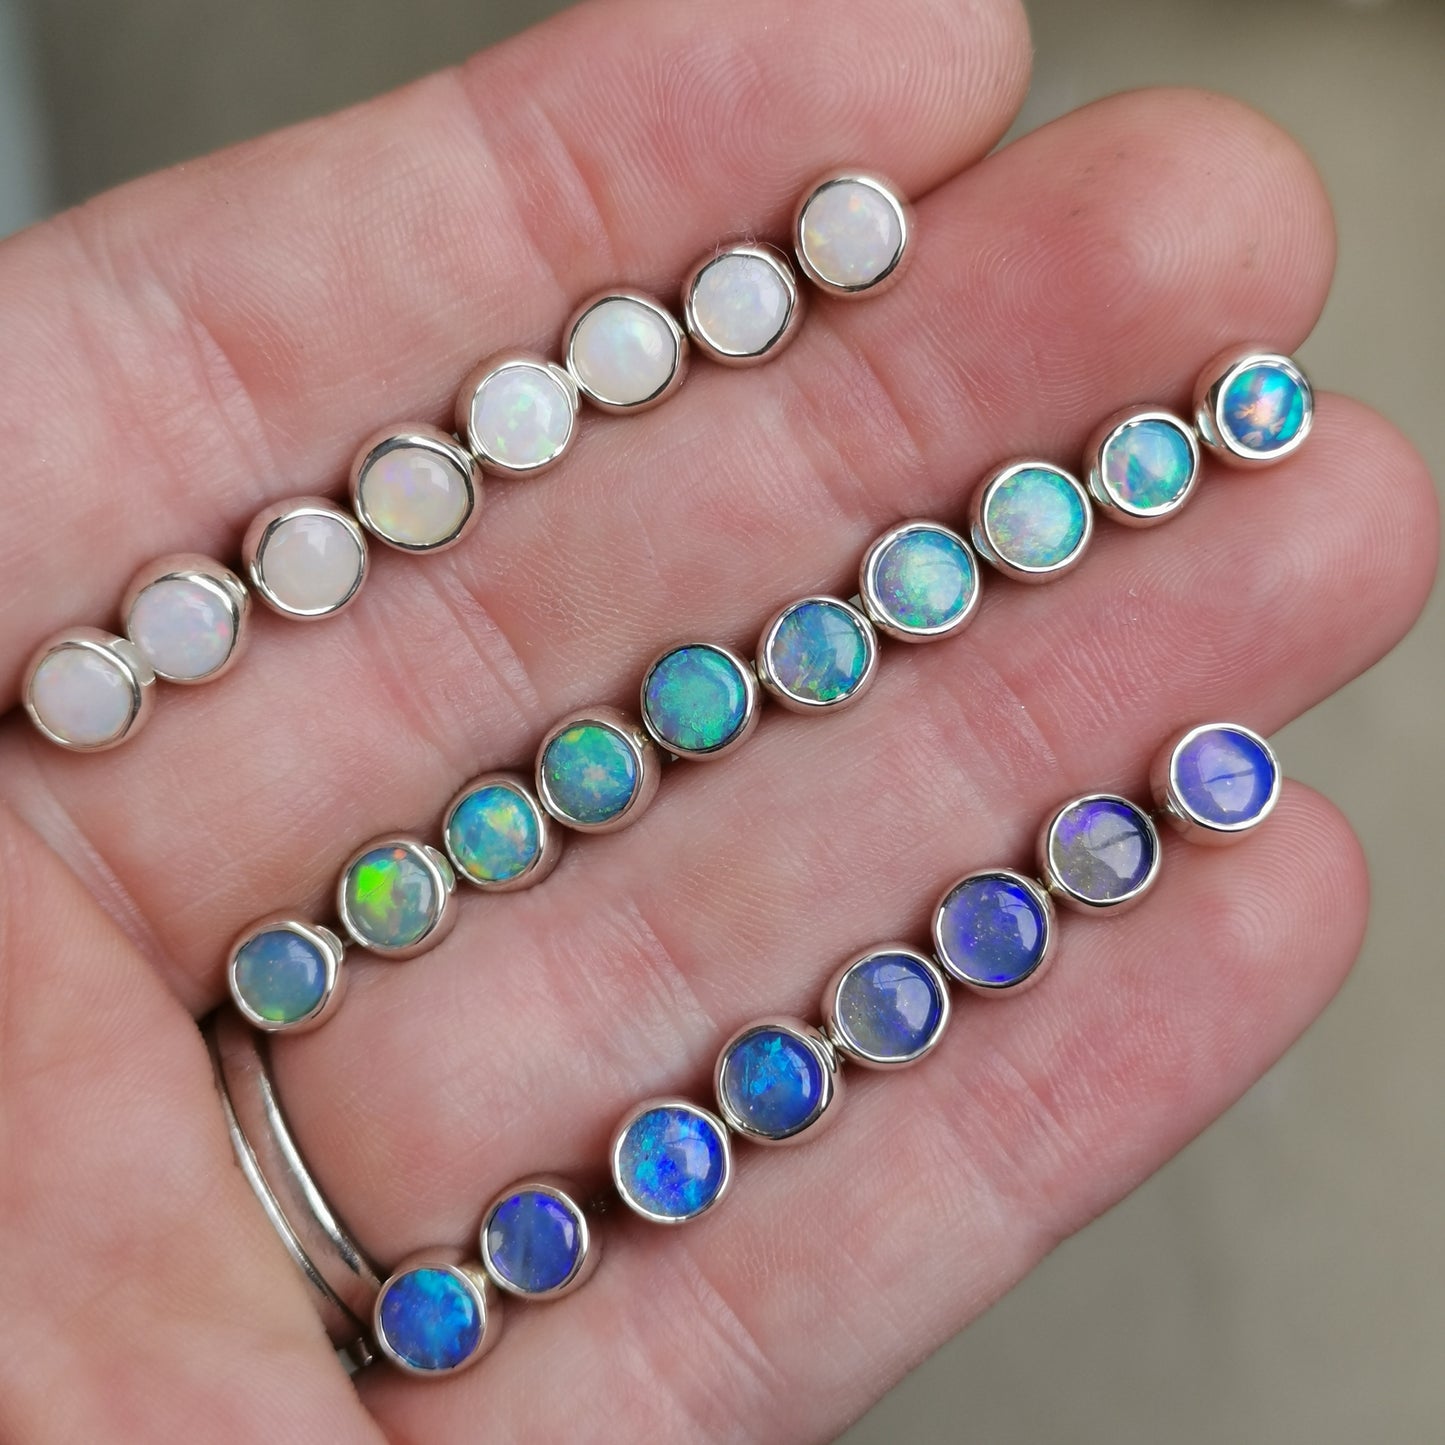 Blue-Purple Silver Opal Studs 5mm